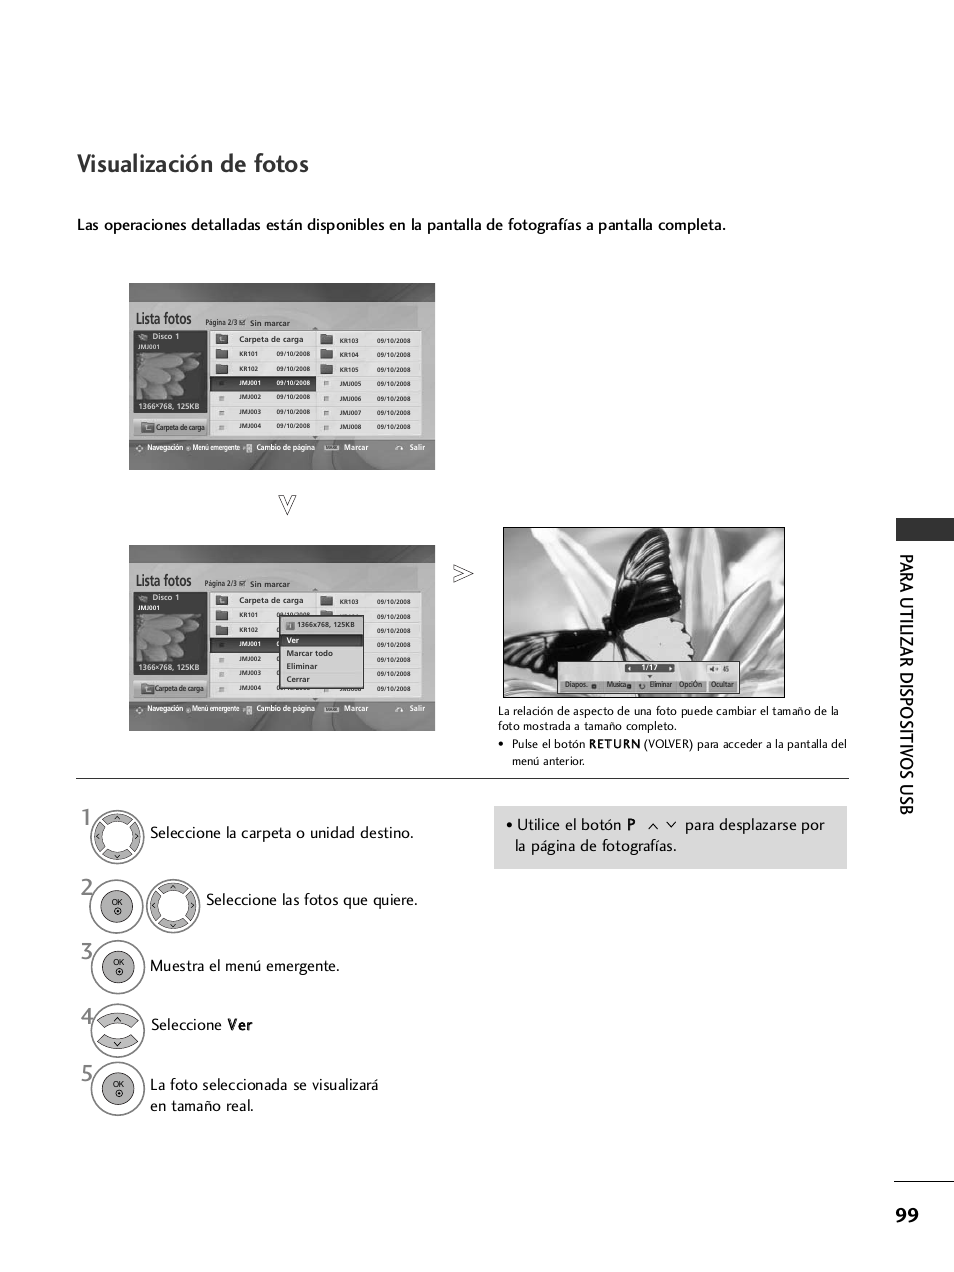 Visualización de fotos, Par a utilizar dispositiv os usb, Lista fotos | LG 32LH40 Manual del usuario | Página 101 / 180